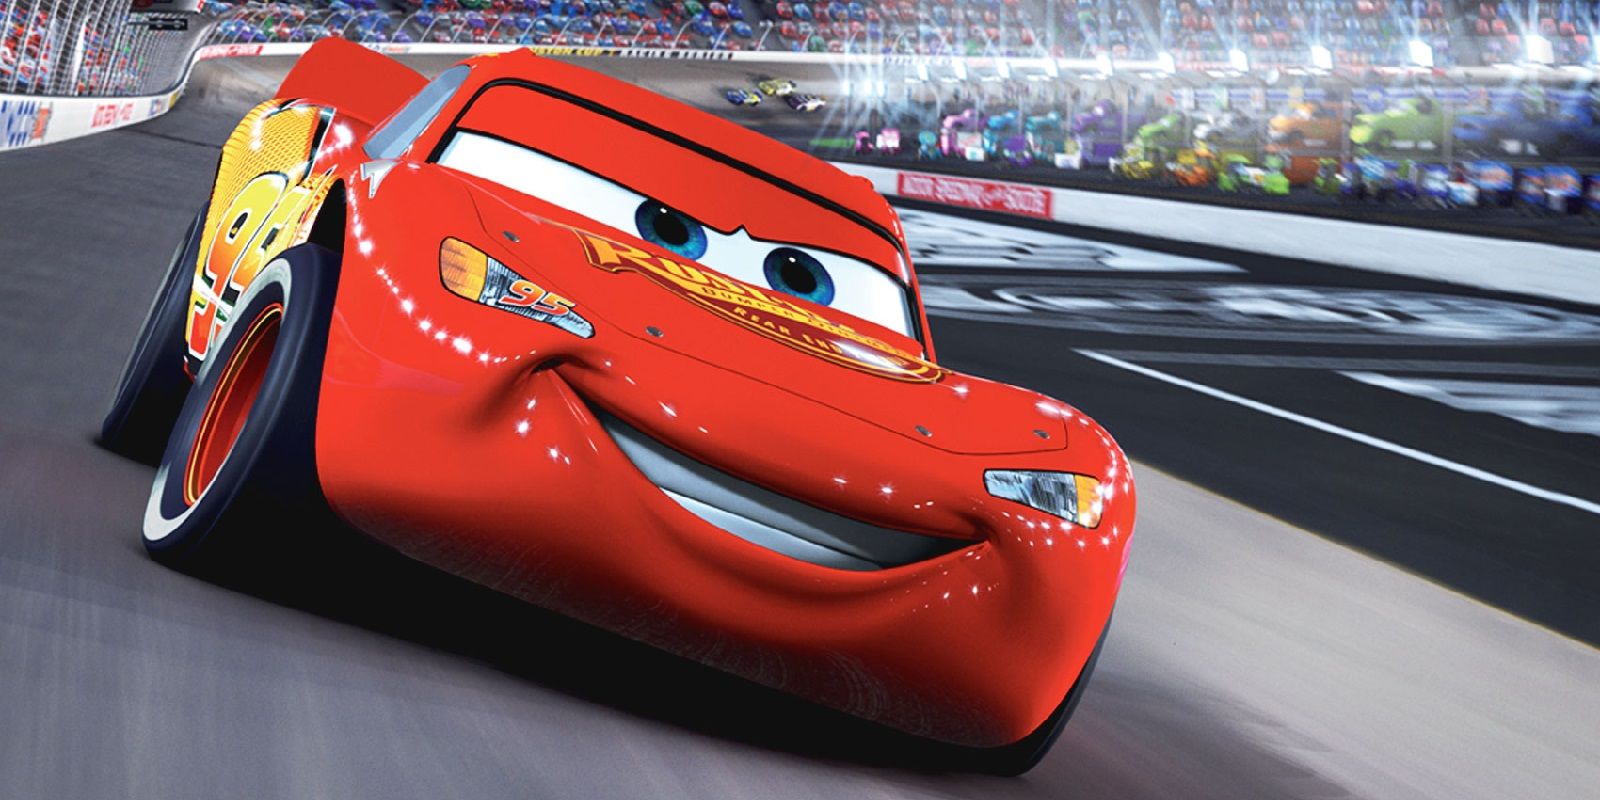 Lightning McQueen racing in Cars